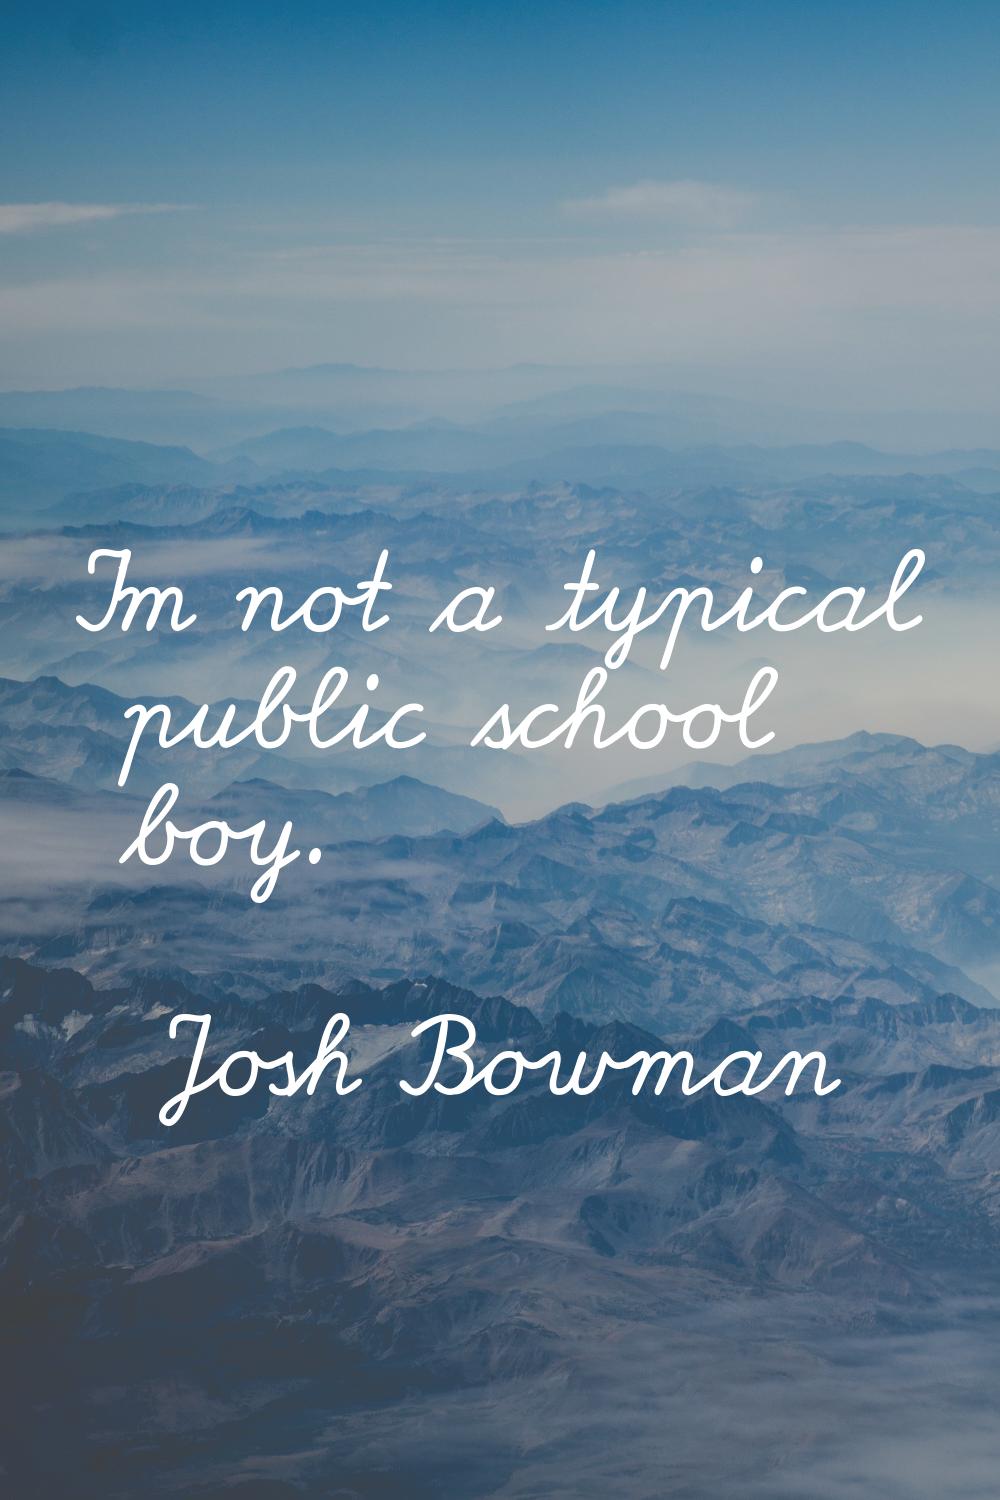 I'm not a typical public school boy.